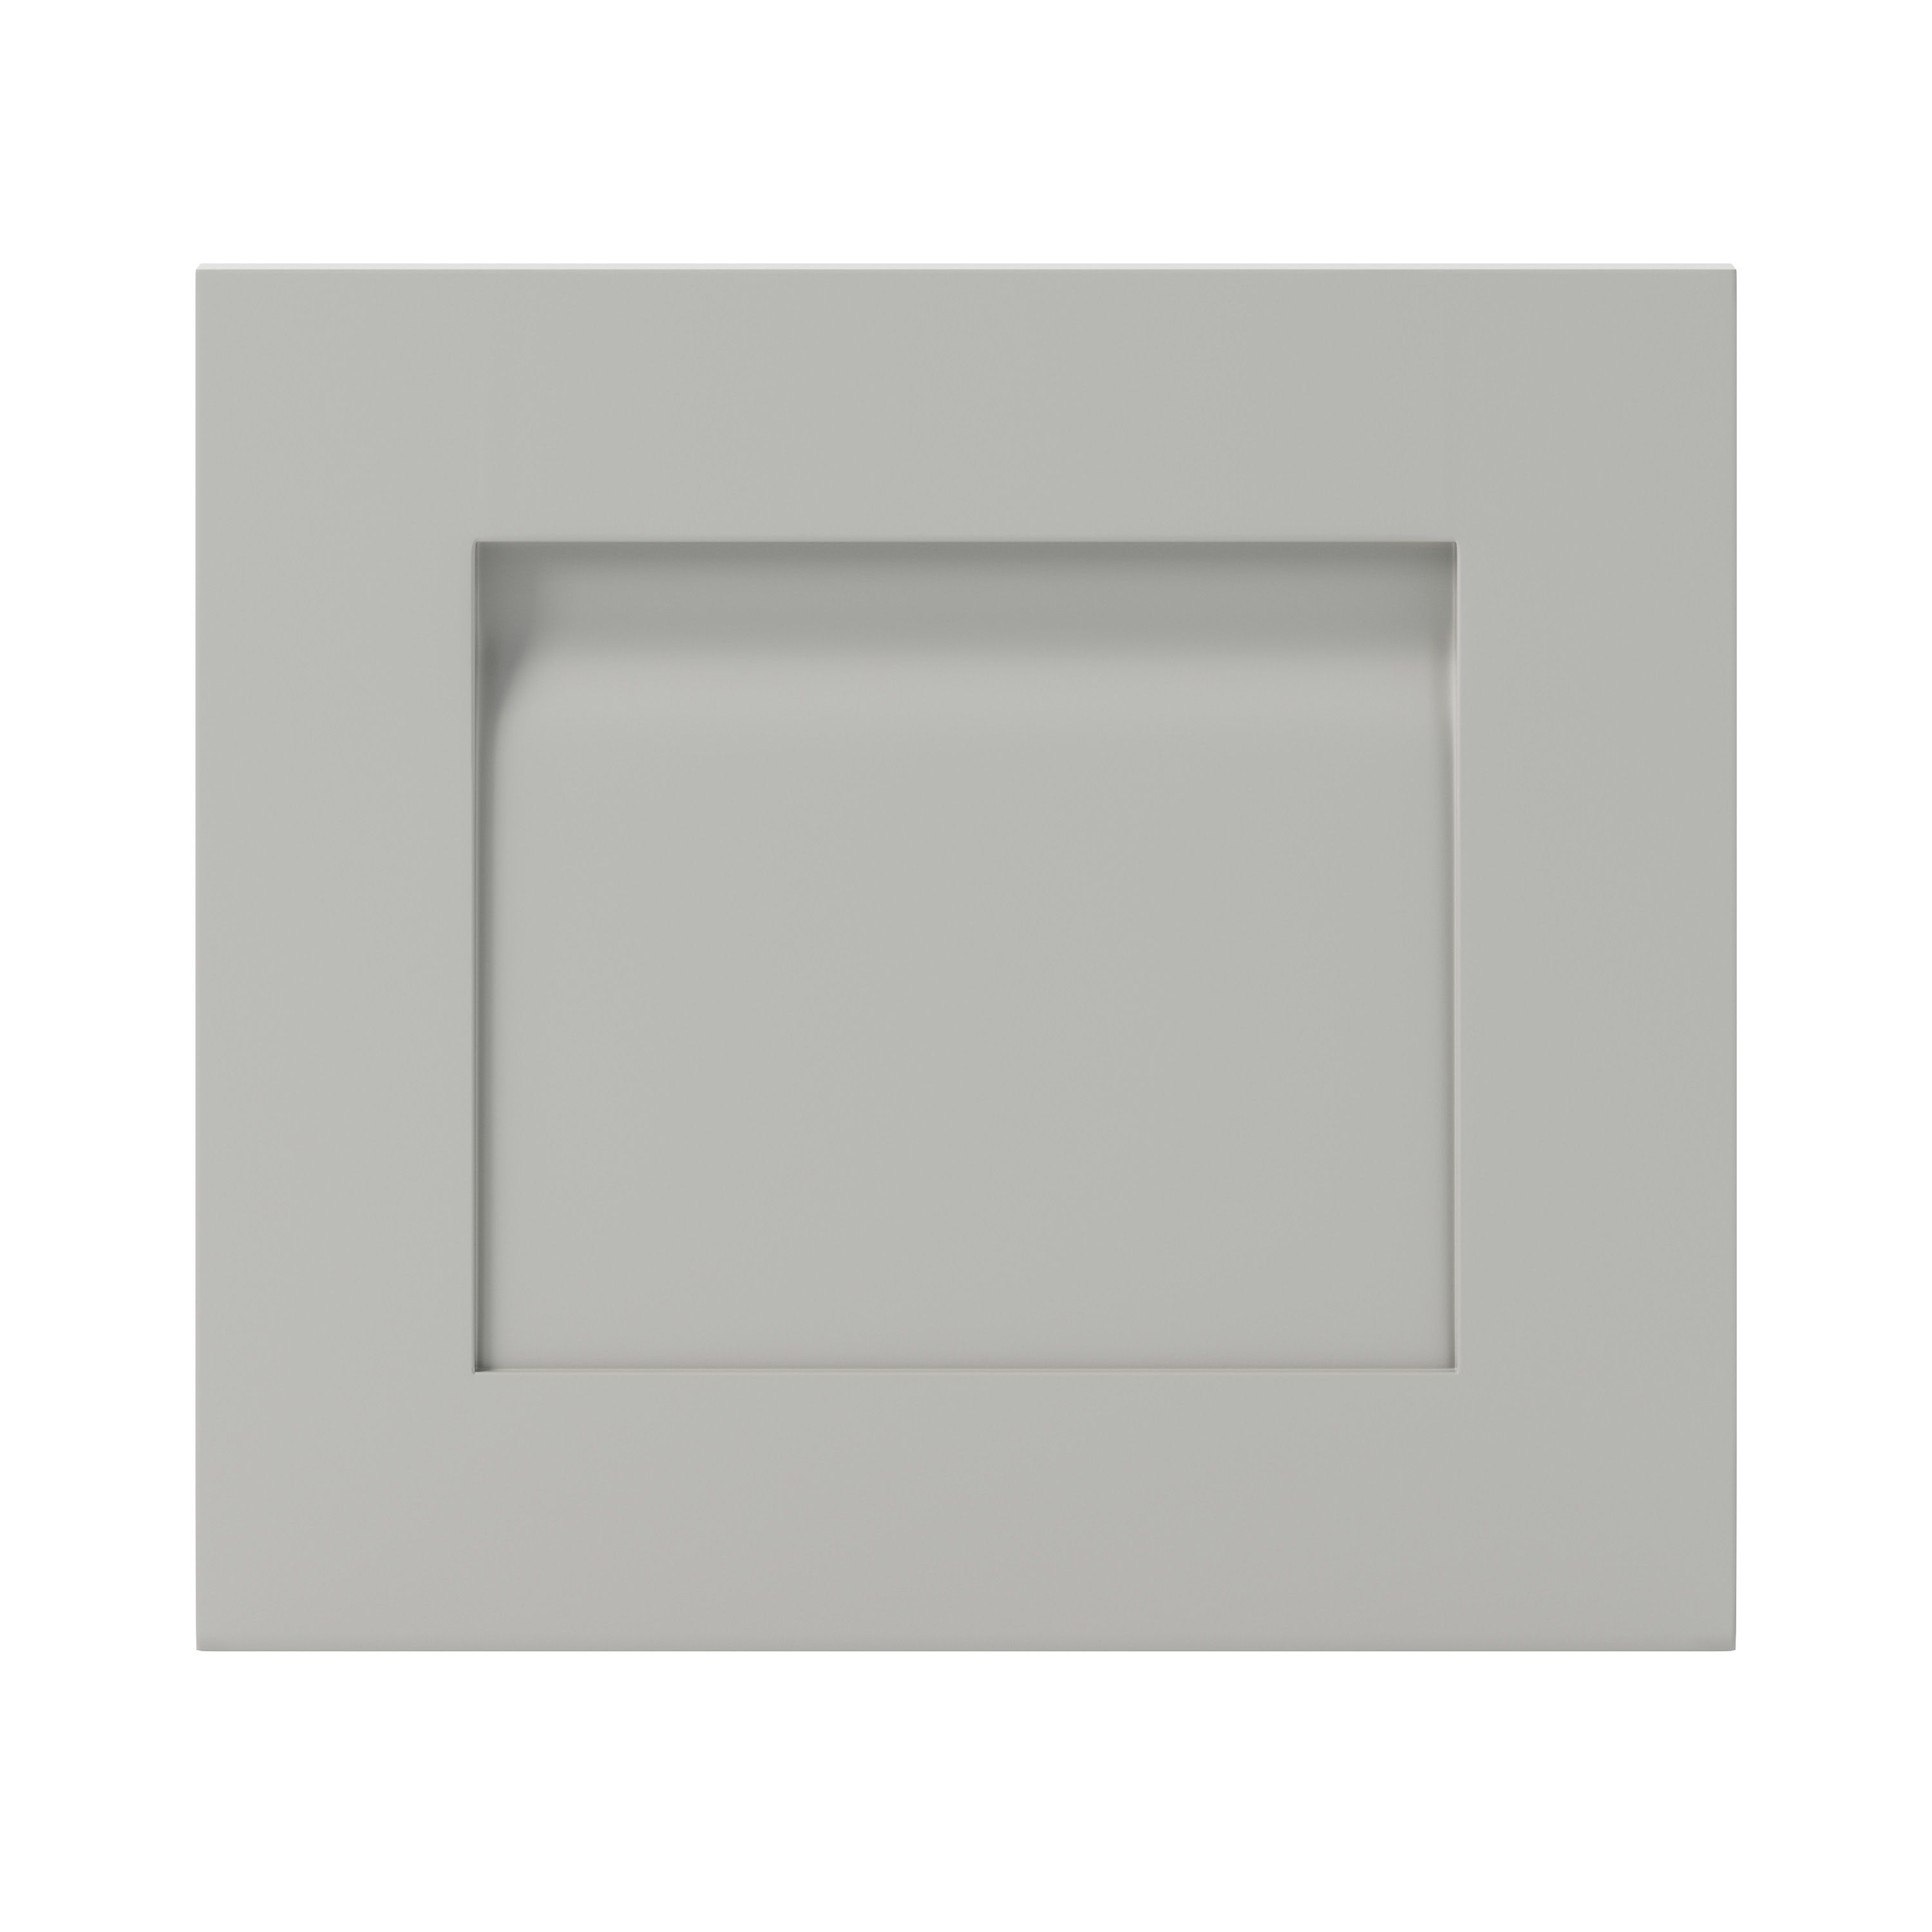 GoodHome Garcinia Matt stone integrated handle shaker Drawer front, bridging door & bi fold door, (W)400mm (H)356mm (T)20mm